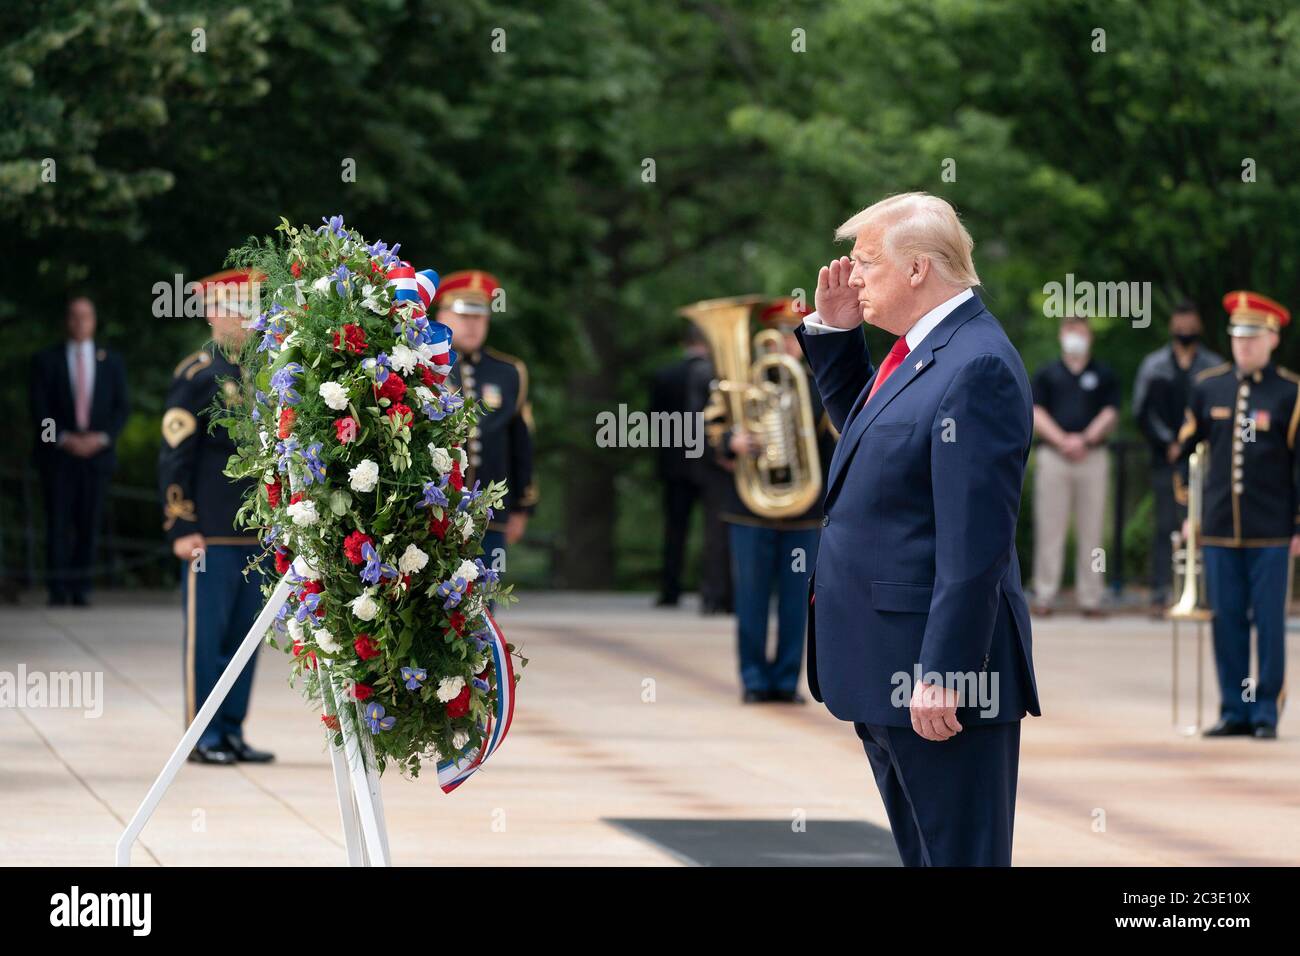 Präsident Donald J. Trump begrüßt seine Teilnahme an der Gedenkfeierlichkeiten am Gedenktag für die Kranzniederlegung am Grab des unbekannten Soldaten auf dem Nationalfriedhof von Arlington Montag, den 25. Mai 2020 in Arlington, Virginia Stockfoto